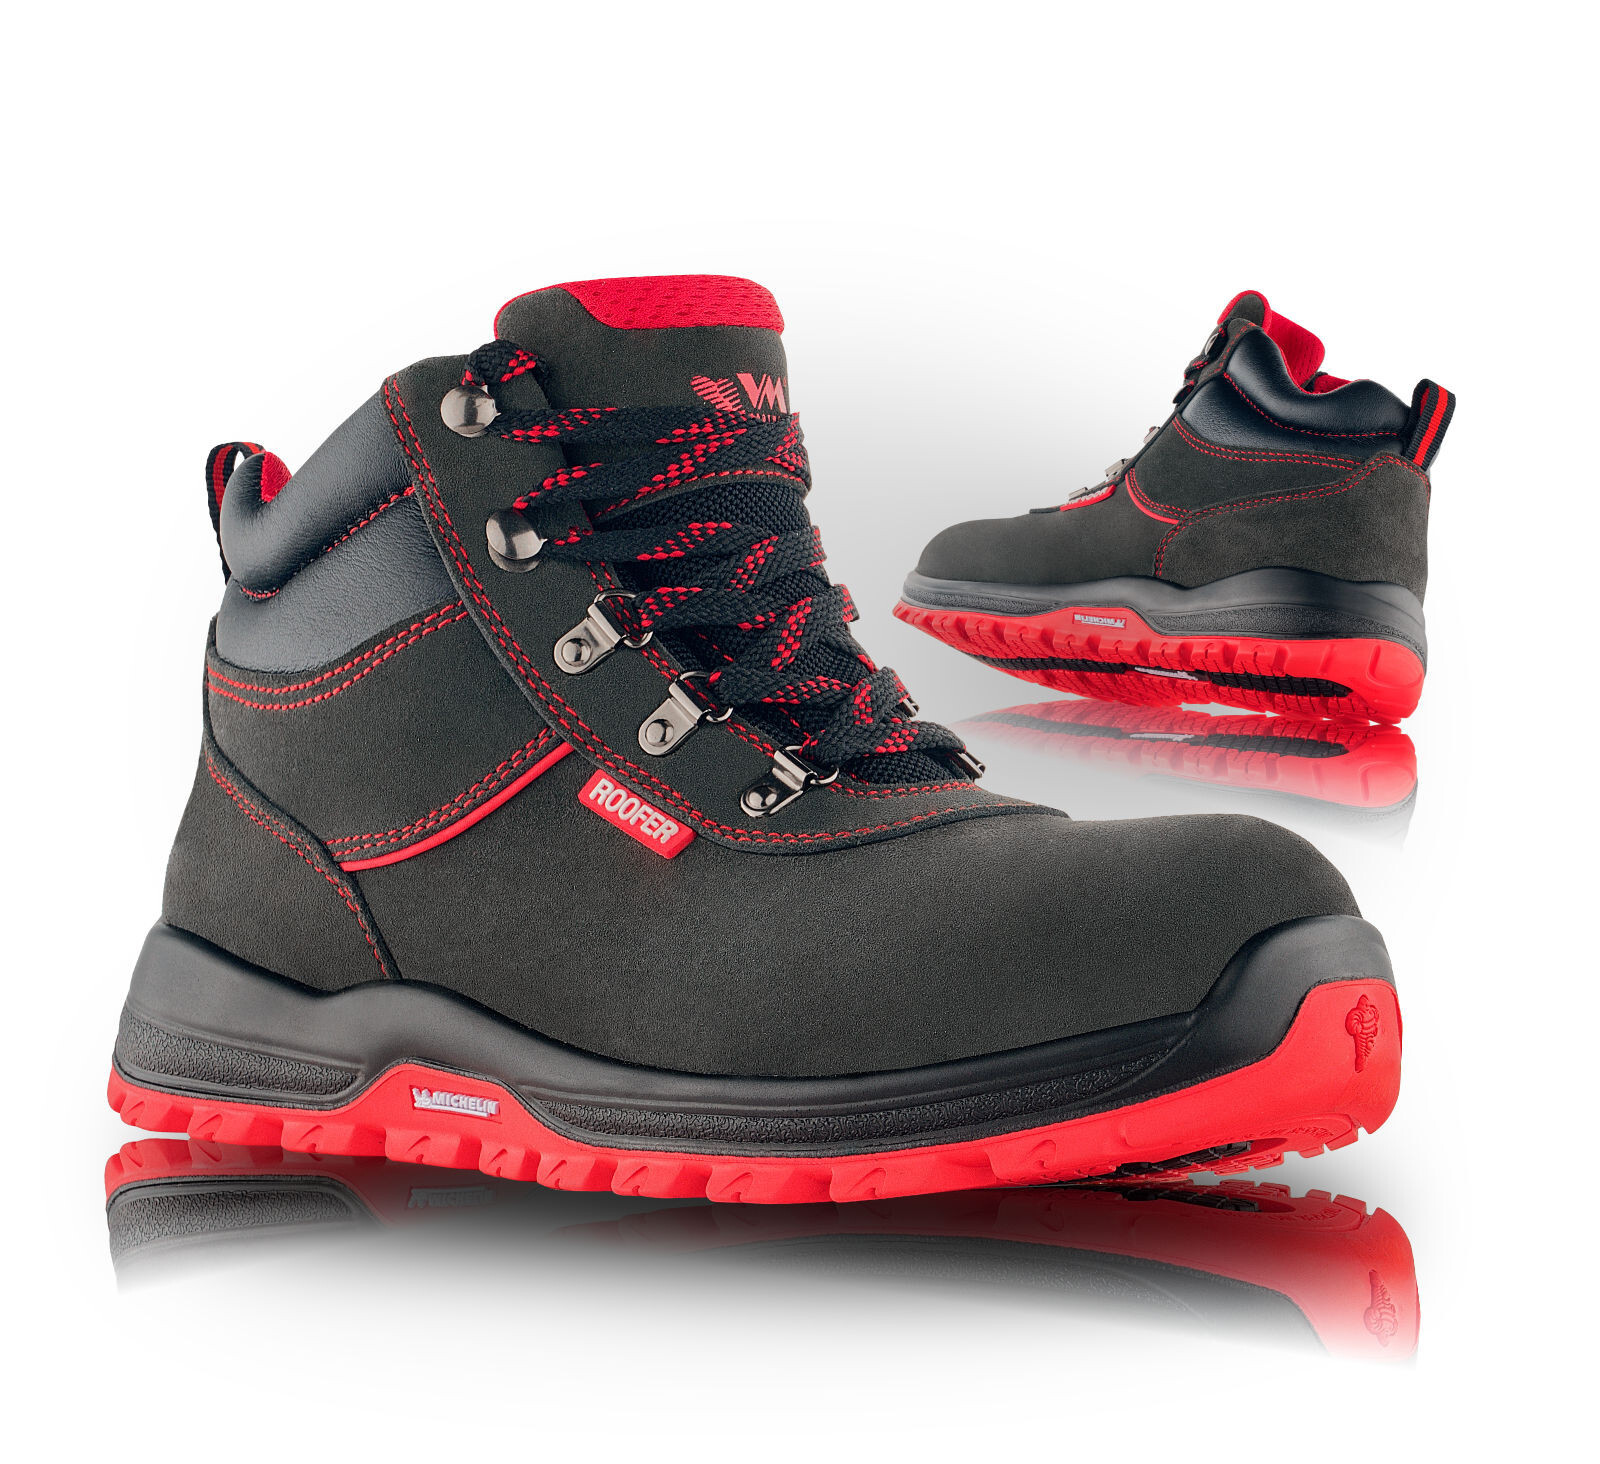 Pracovná členková obuv VM Bonn O1PL FO SR pre strechárov - veľkosť: 42, farba: čierna/červená